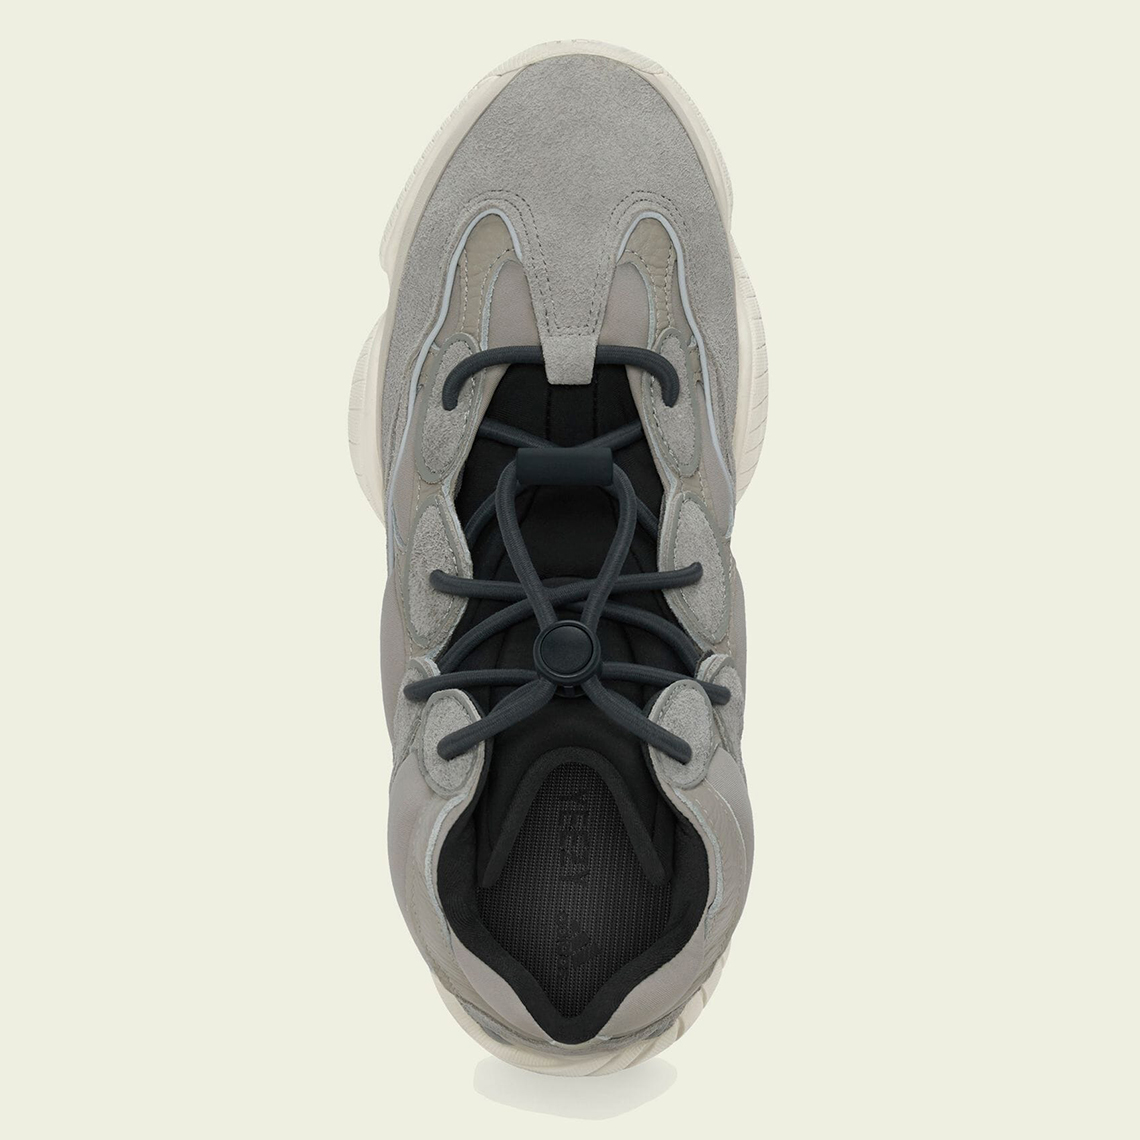 Adidas Il n'y a pas d'avis disponible pour Shoe adidas Performance Casquette noire Mist Stone Gv7775 2